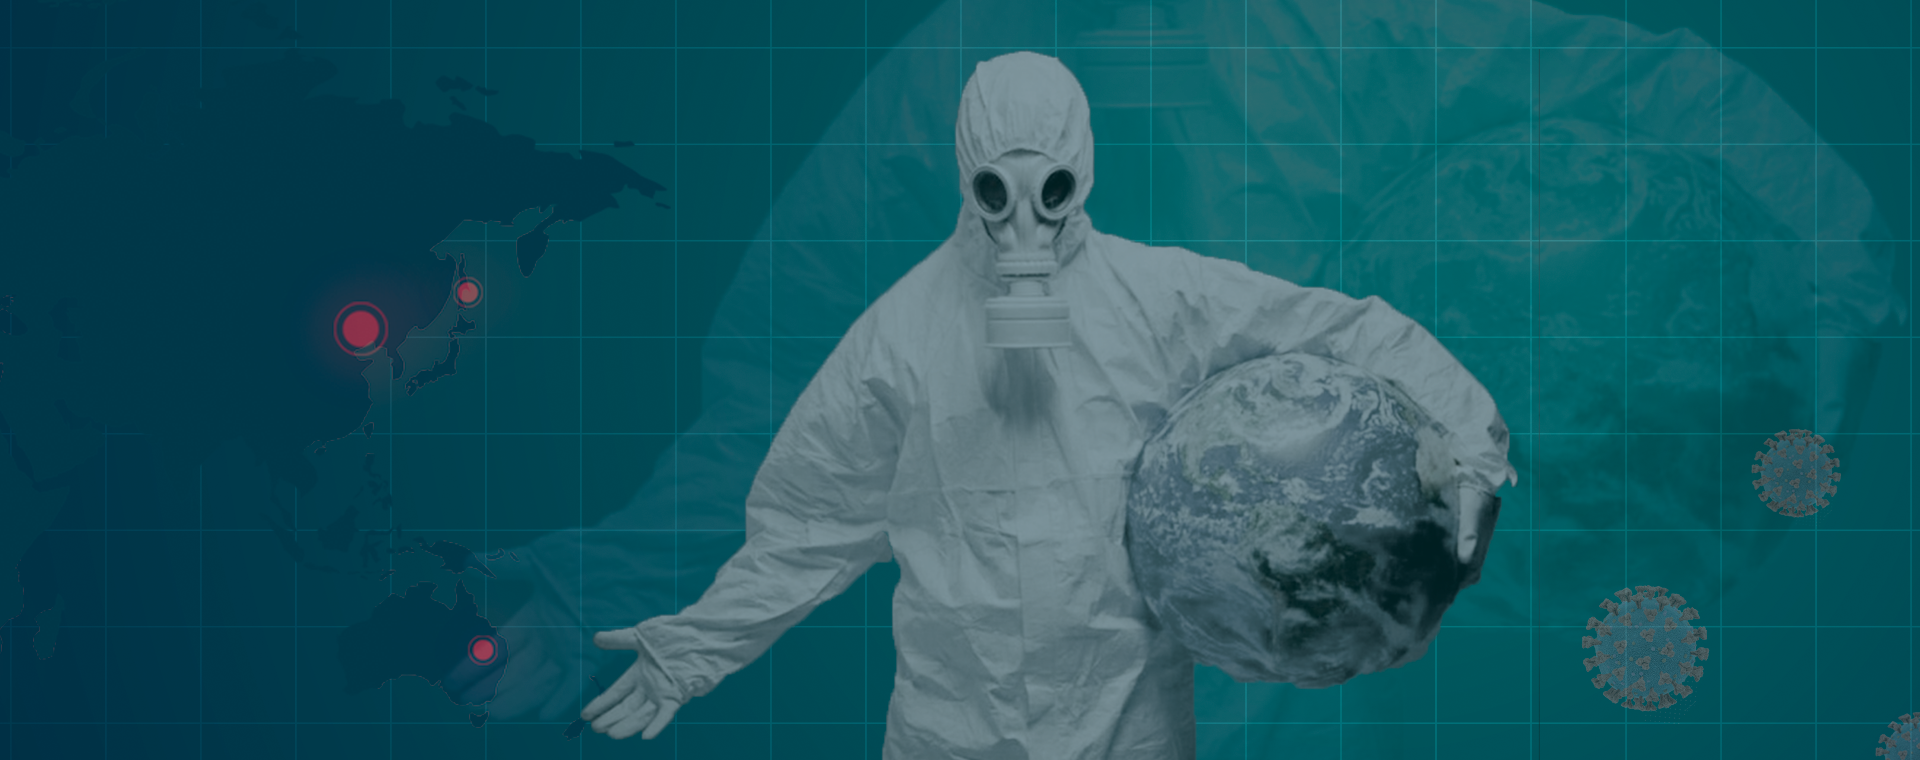 La gobernanza global en tiempos de pandemia